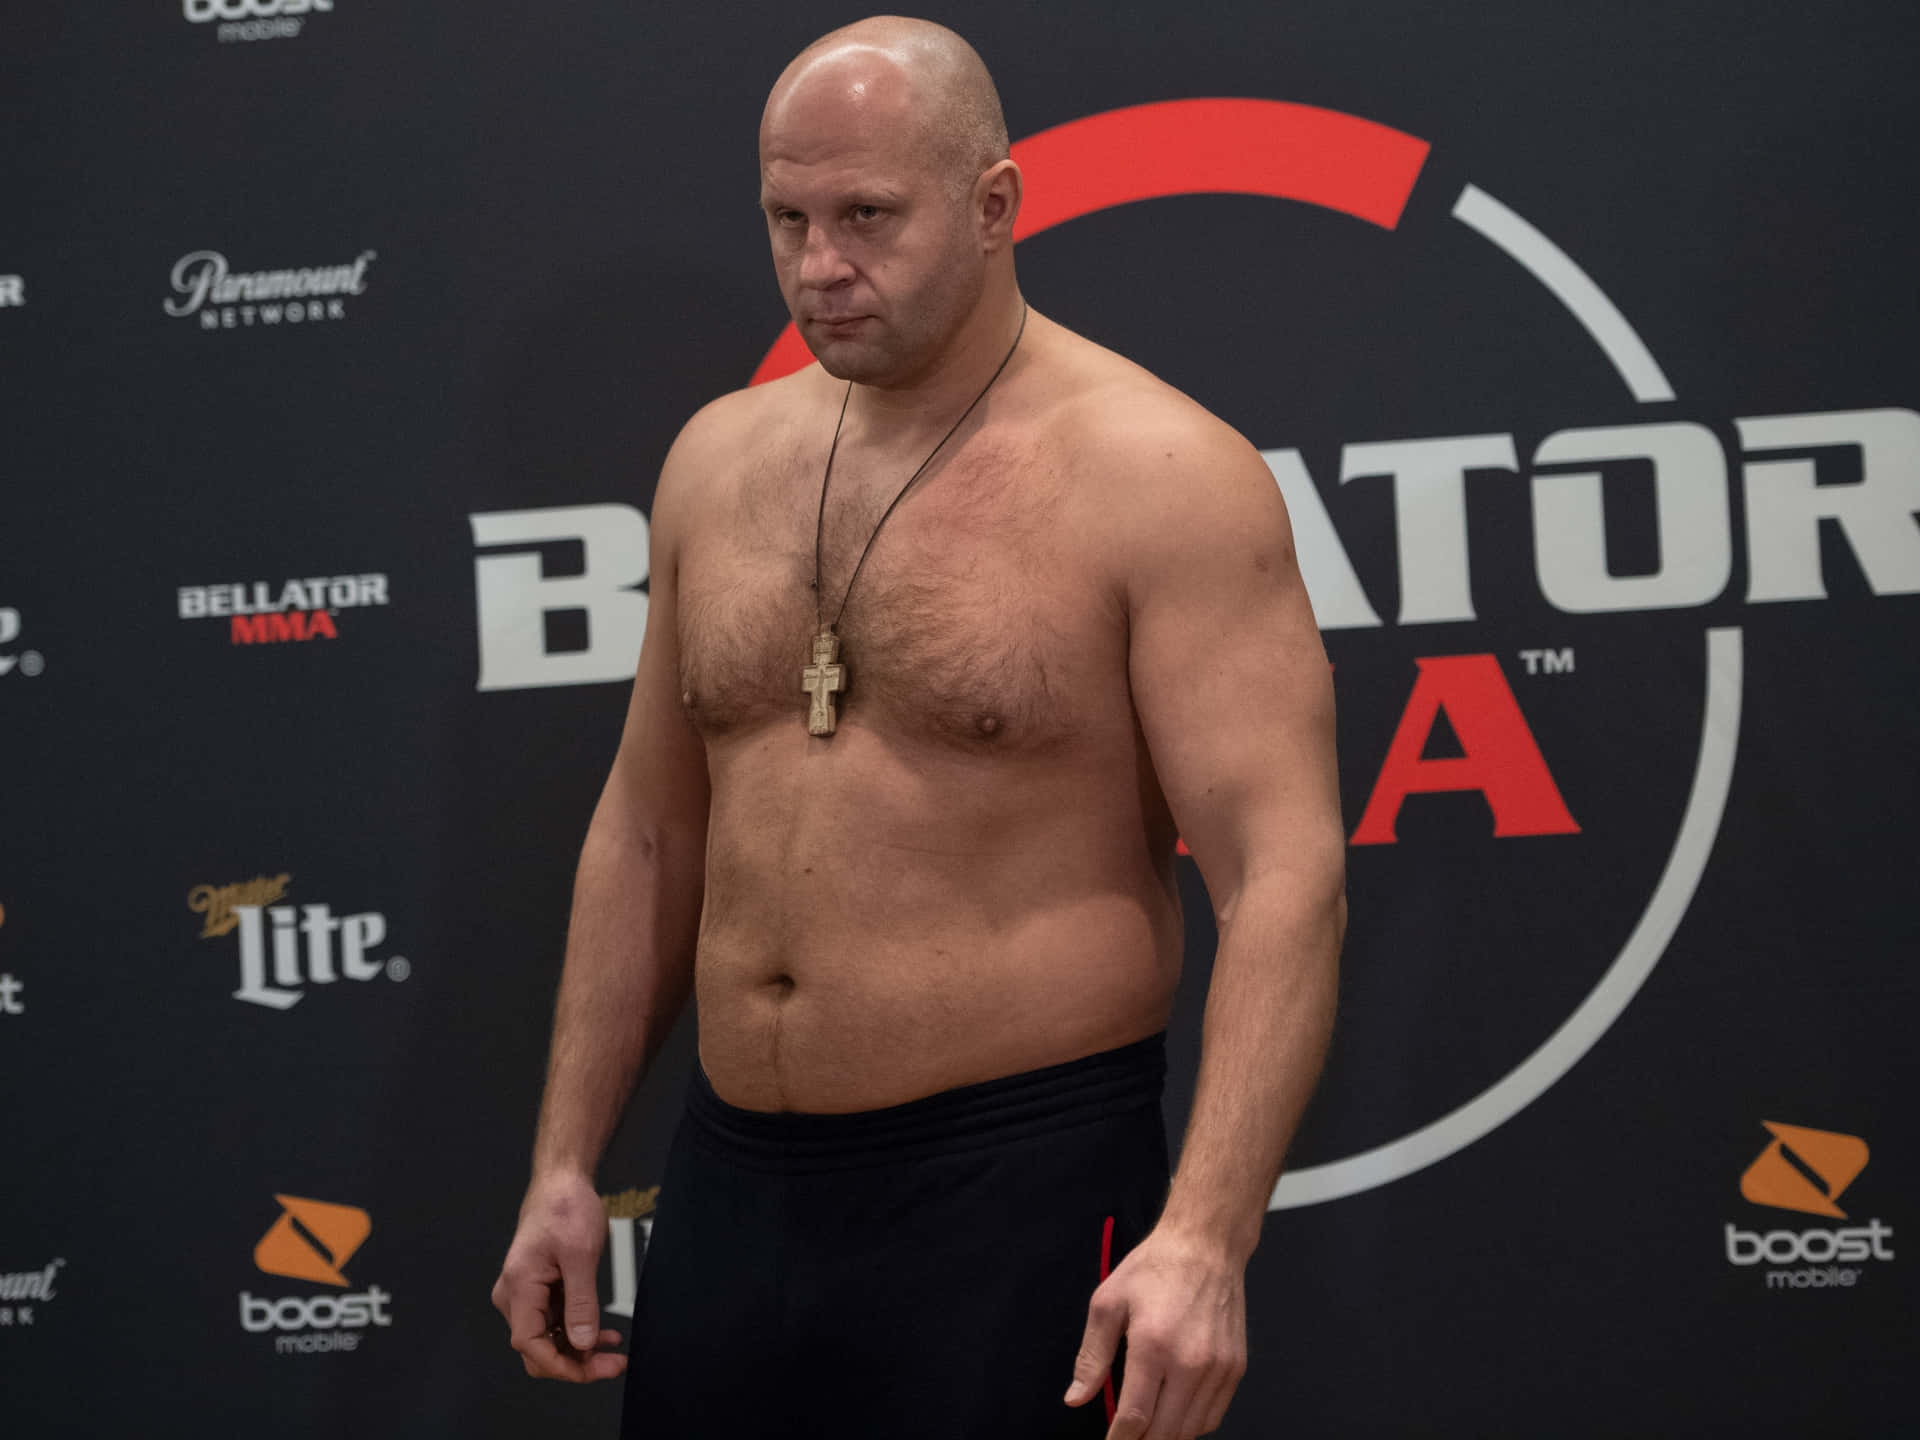 Russian Athlete Fedor Emelianenko Bellator 214 Weigh In Wallpaper